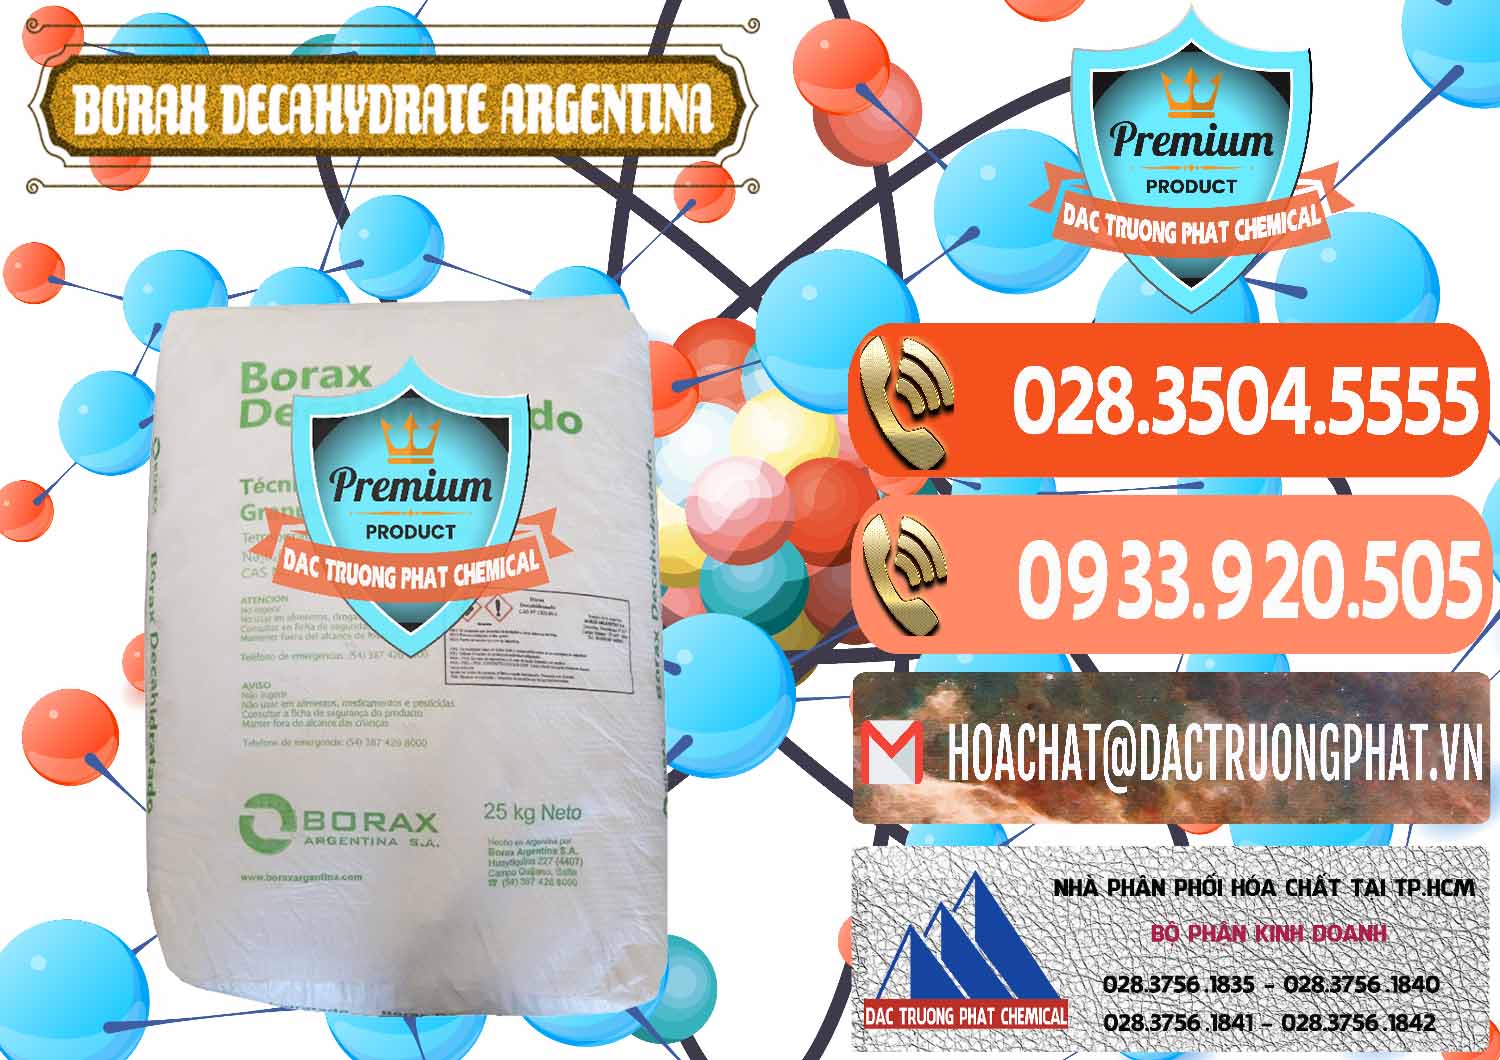 Nơi bán và cung cấp Borax Decahydrate Argentina - 0446 - Đơn vị chuyên cung cấp ( bán ) hóa chất tại TP.HCM - hoachatmientay.com